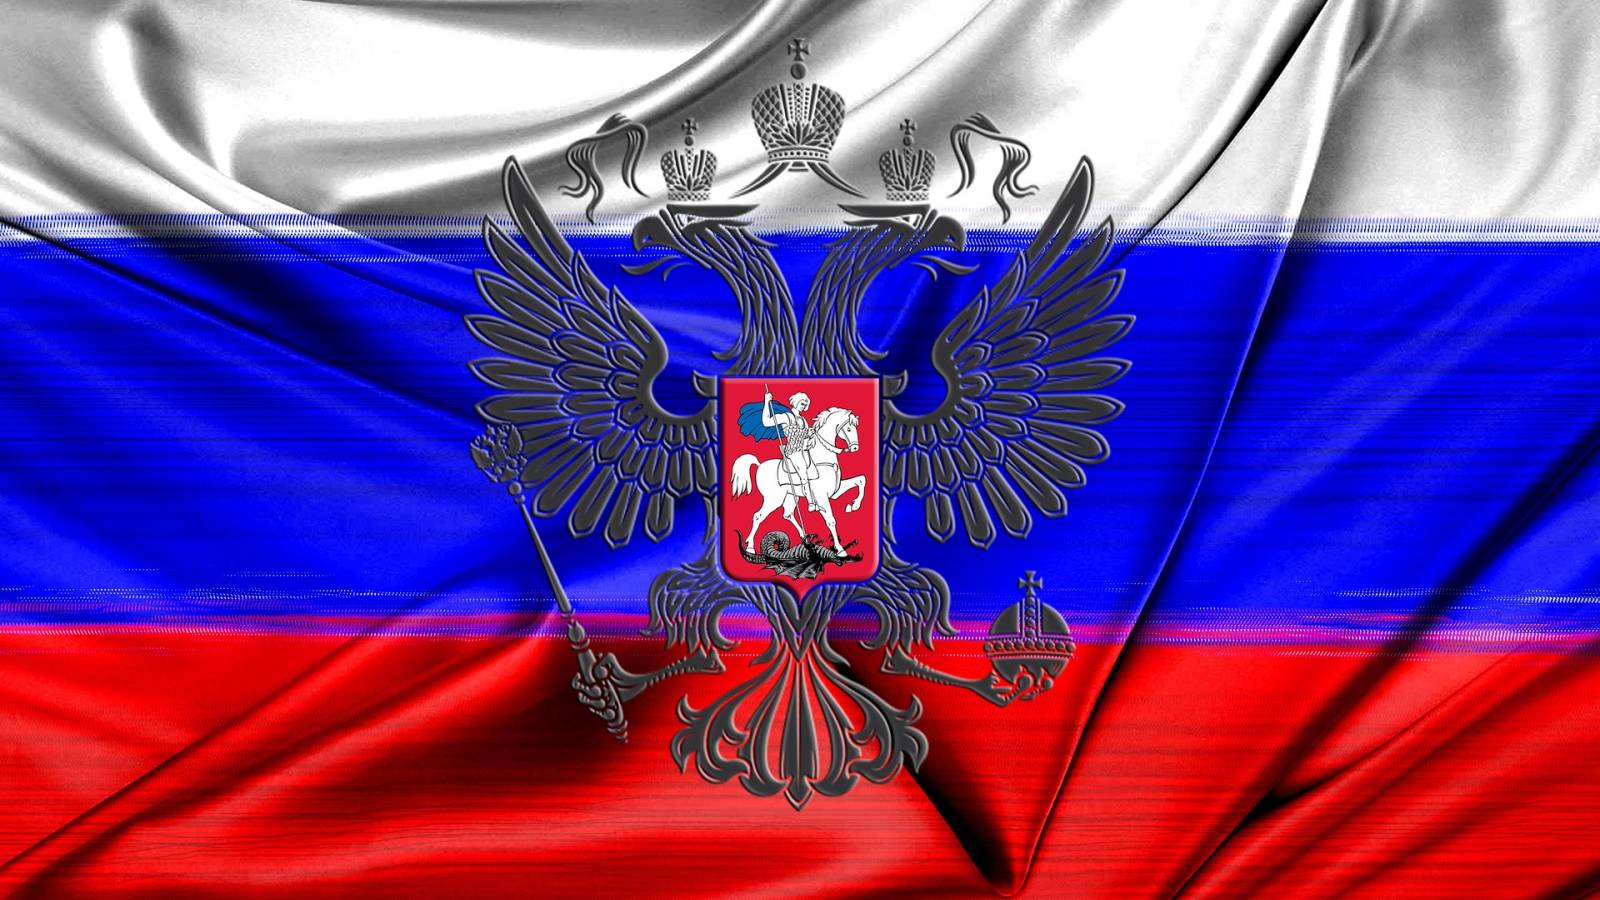 De Republiek Moldavië weigerde de toegang tot haar grondgebied van Russische soldaten uit Transnistrië